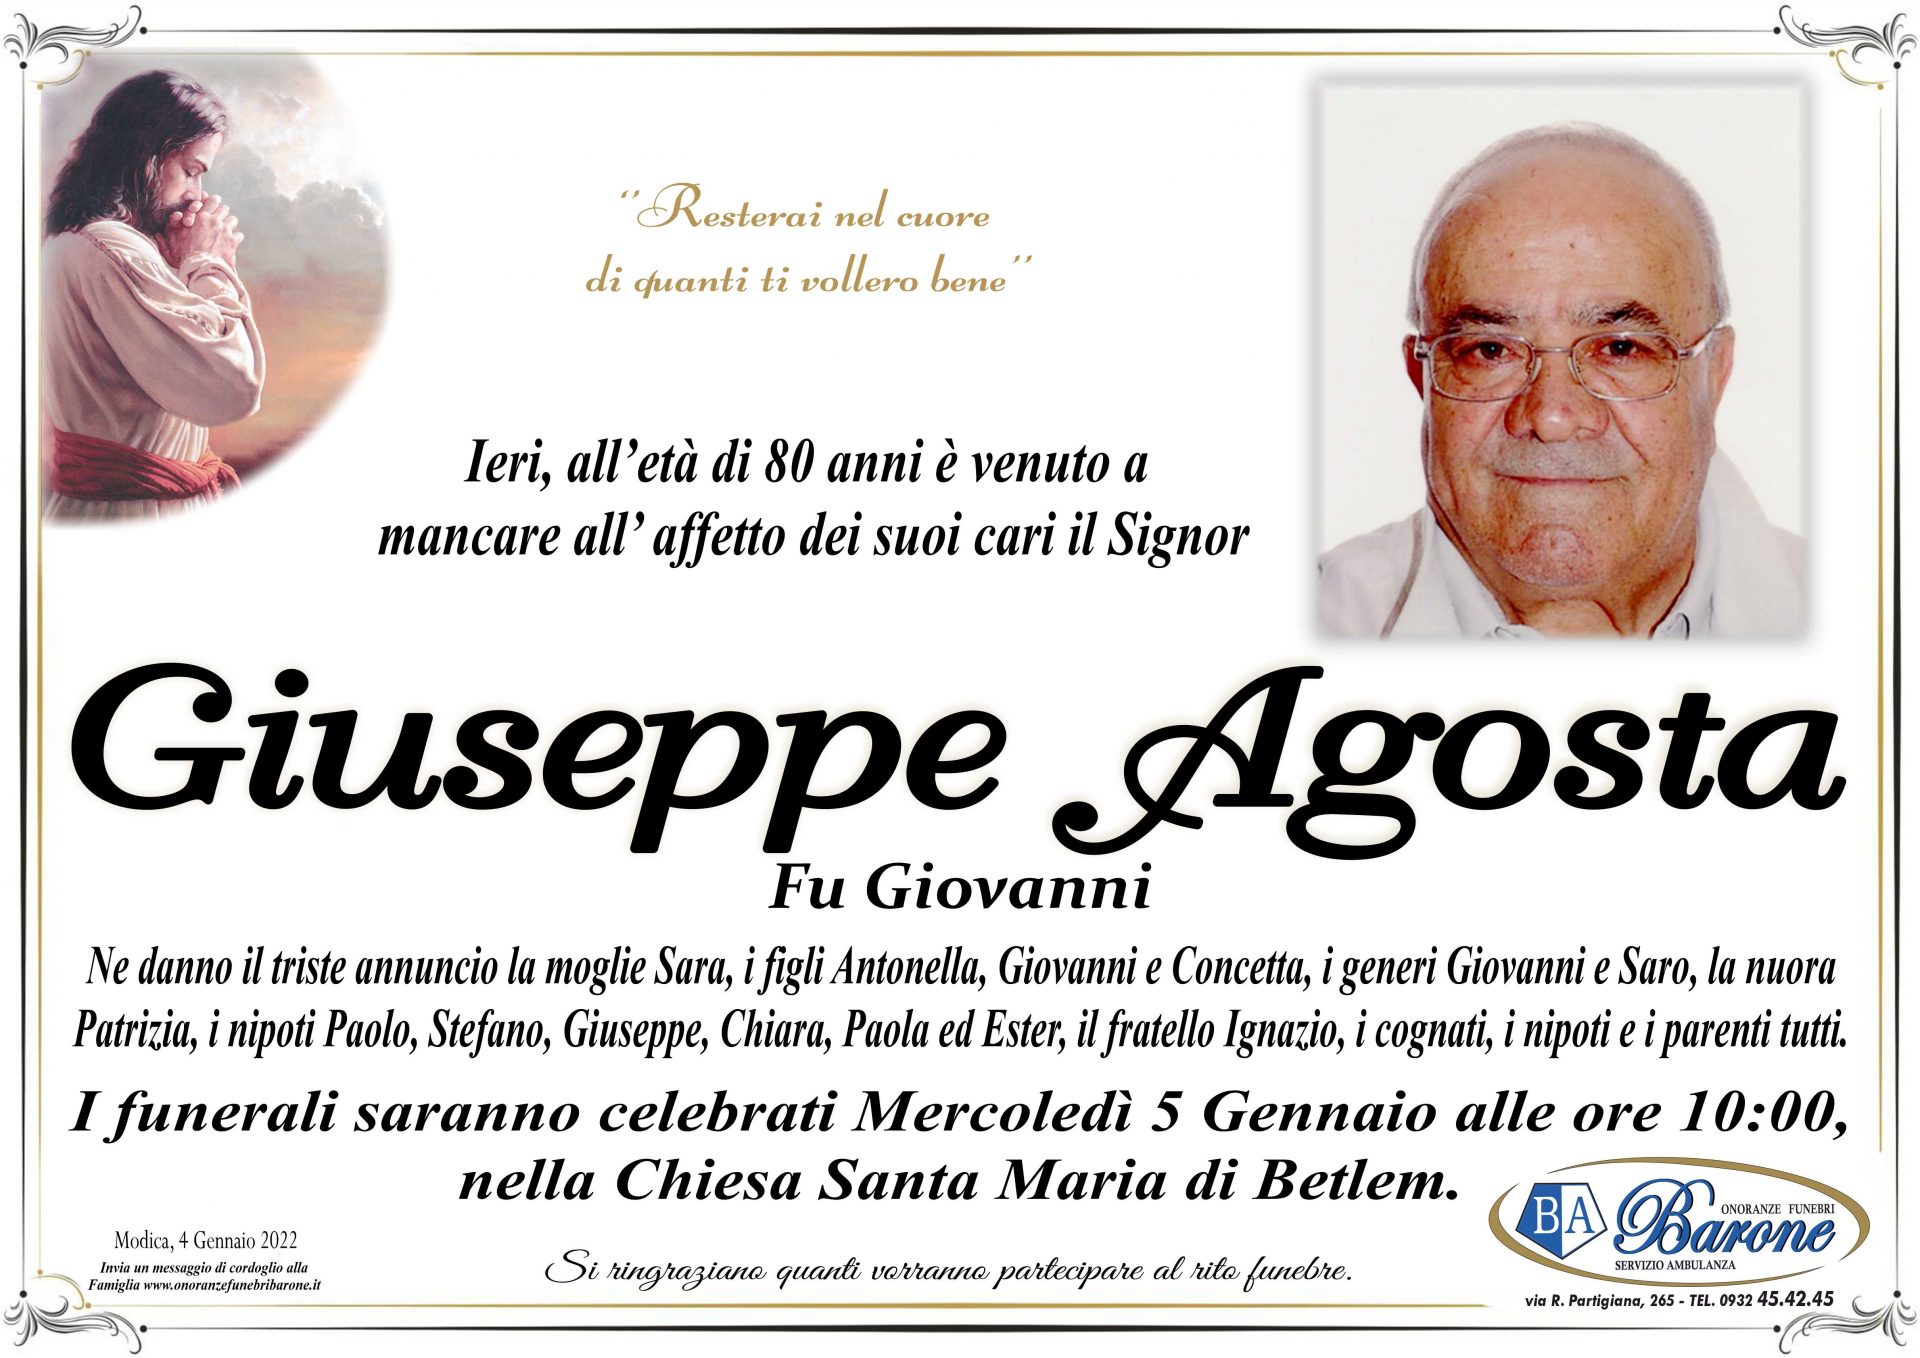 Giuseppe Agosta